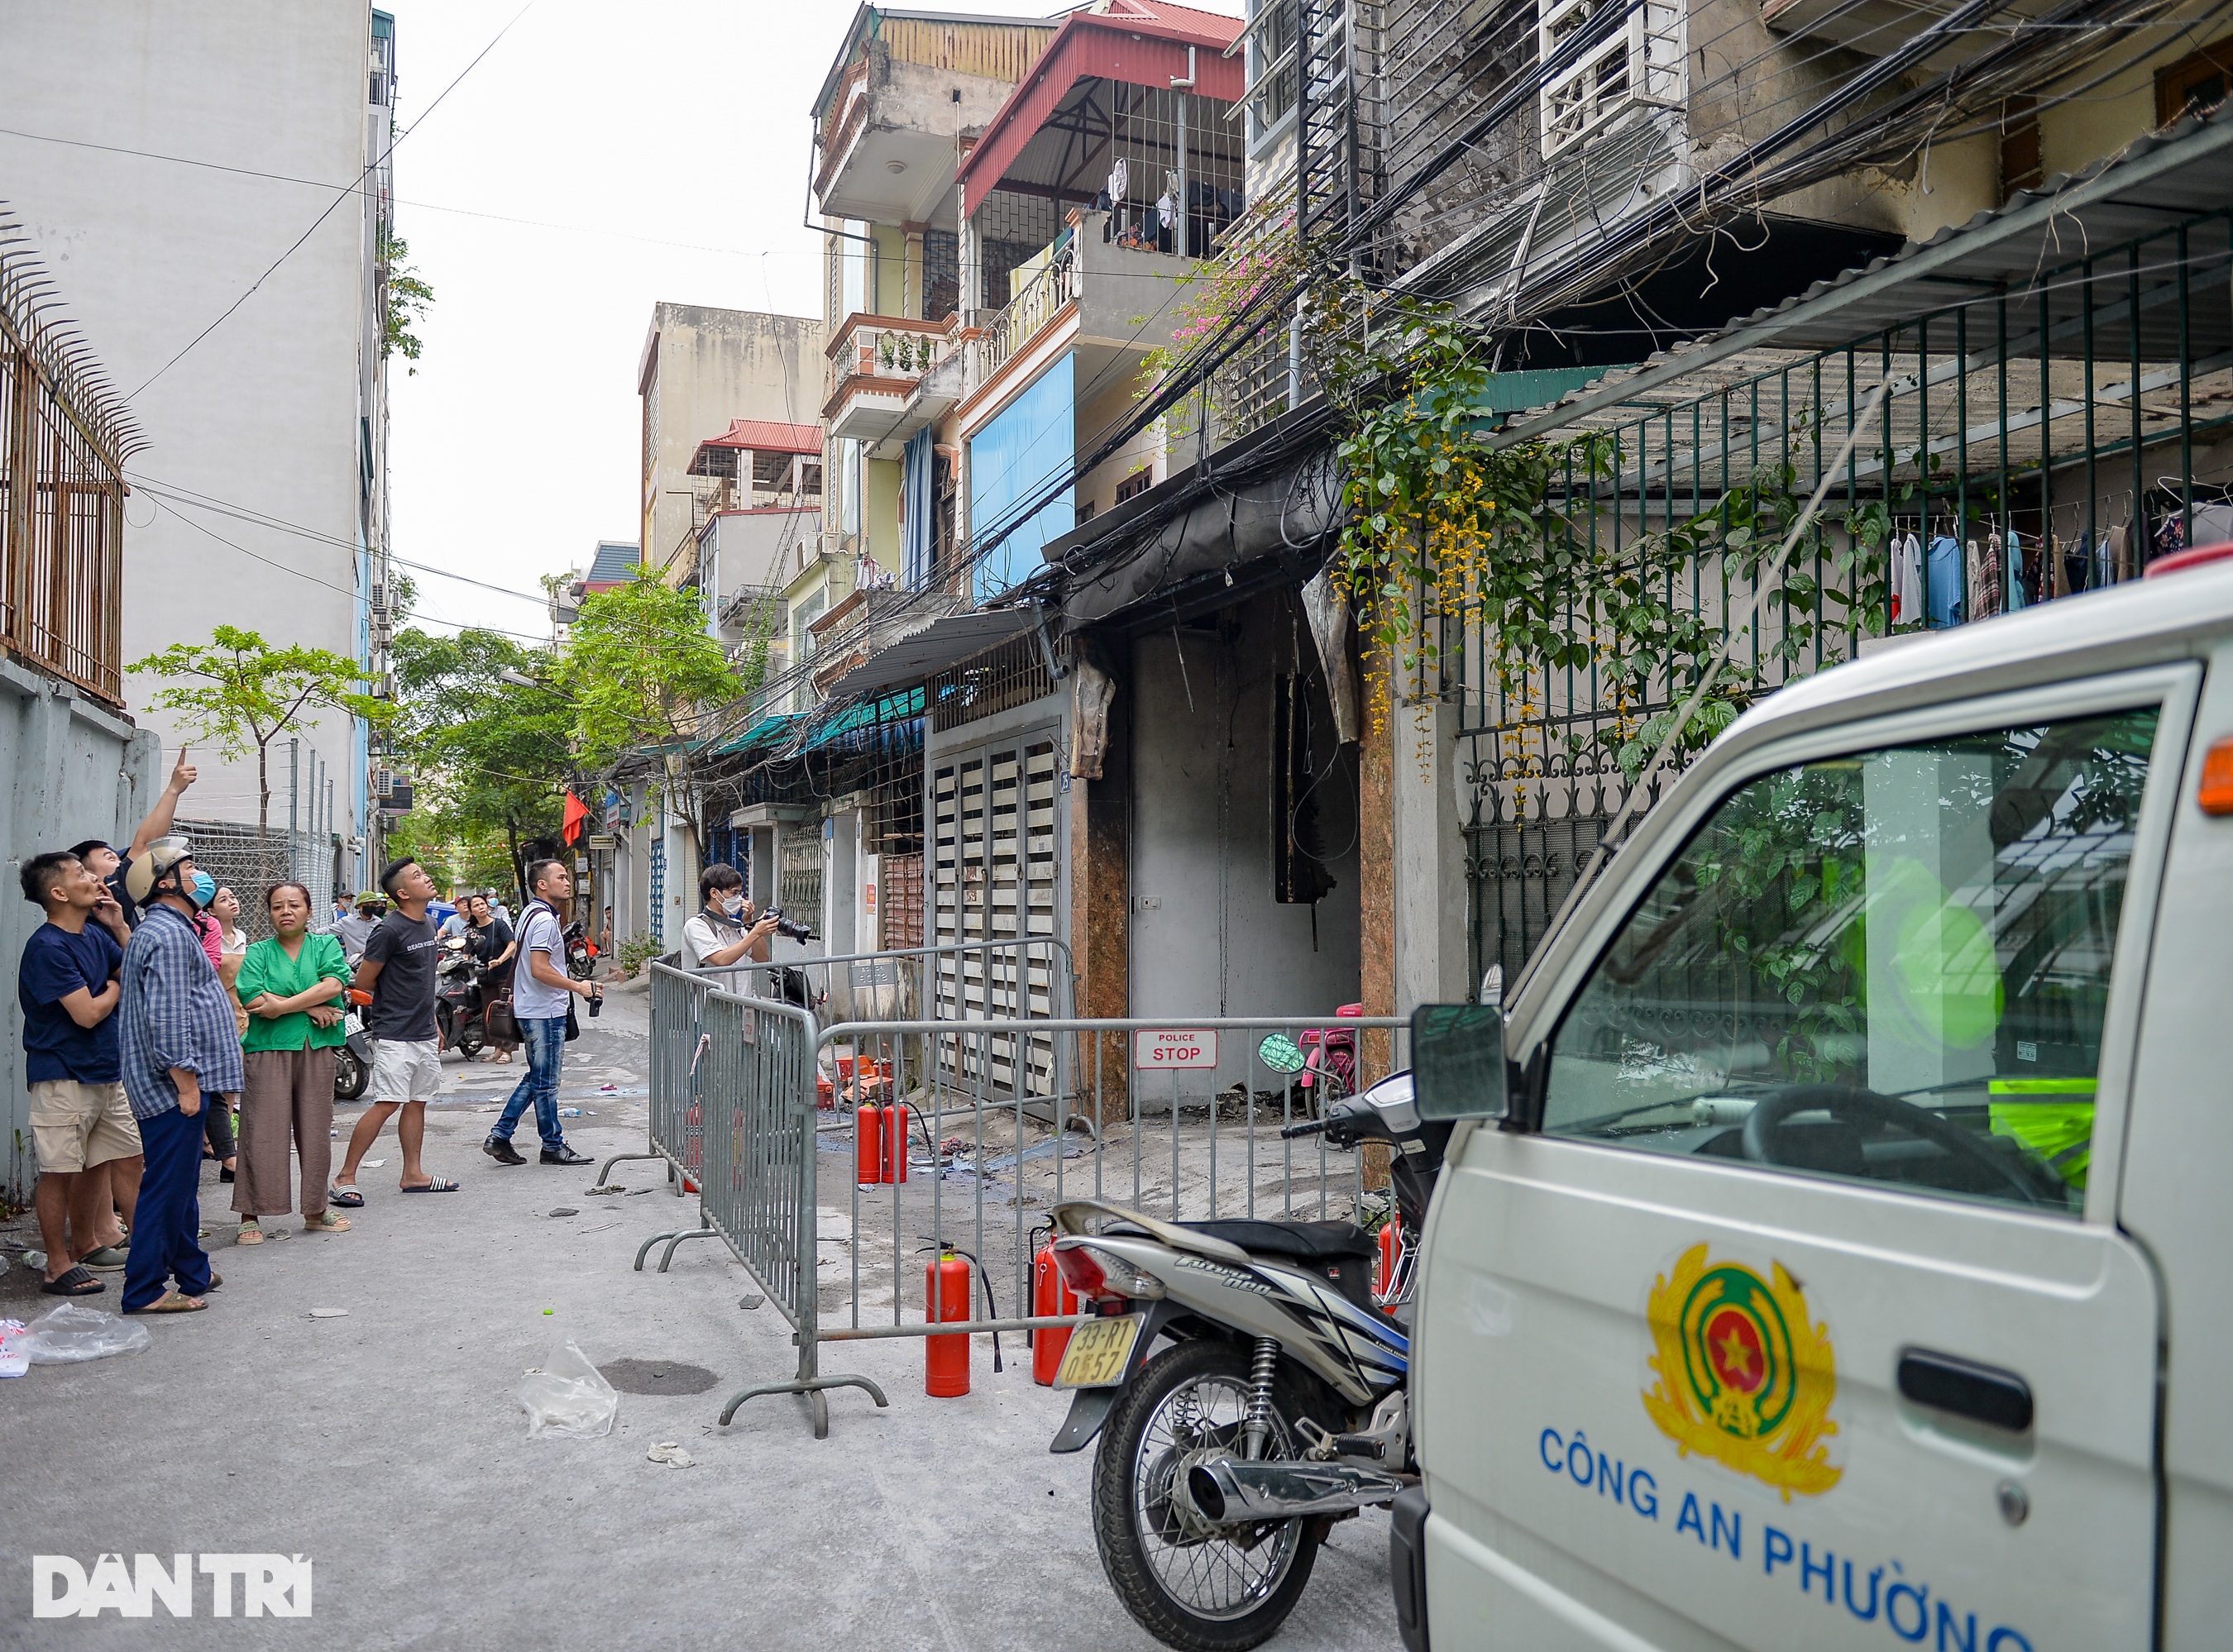 Hiện trường vụ hỏa hoạn ở Hà Nội khiến 4 bà cháu tử vong - 1